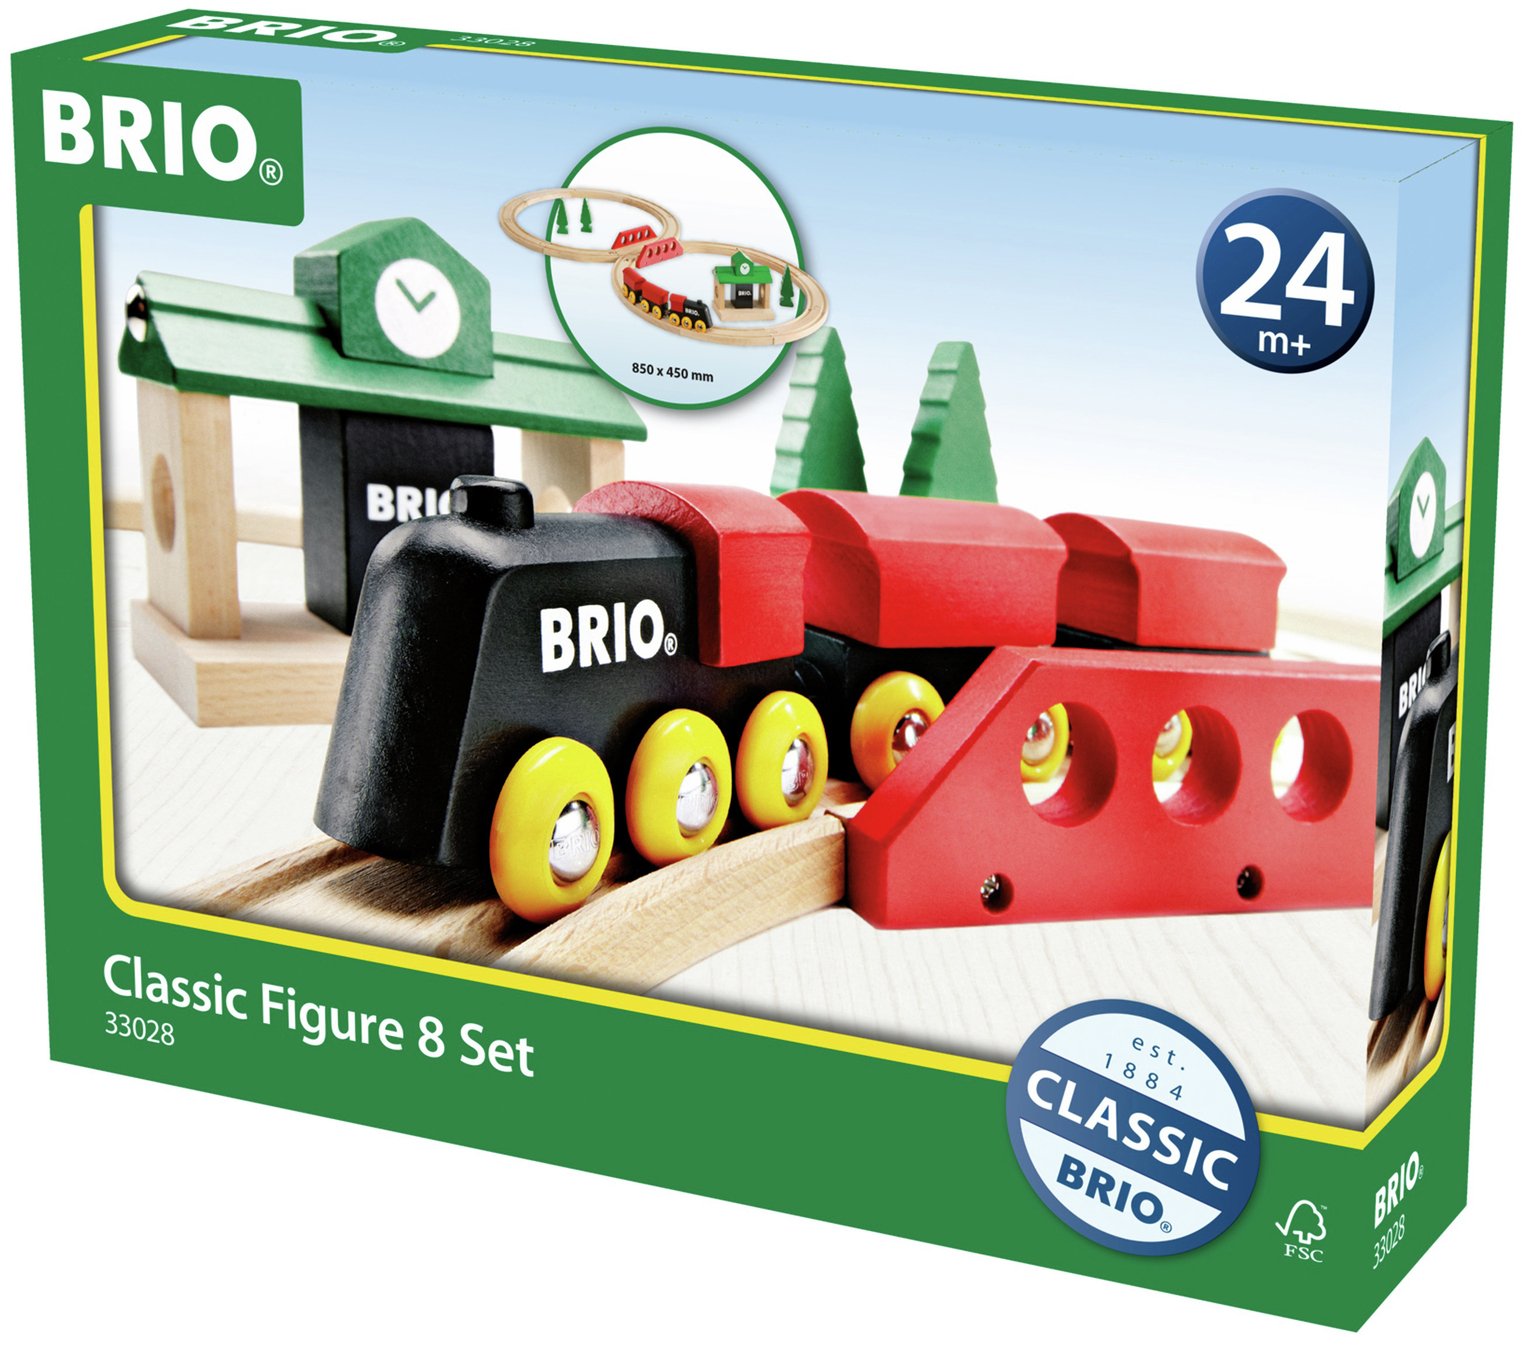 BRIO Classic 8 Figure Set